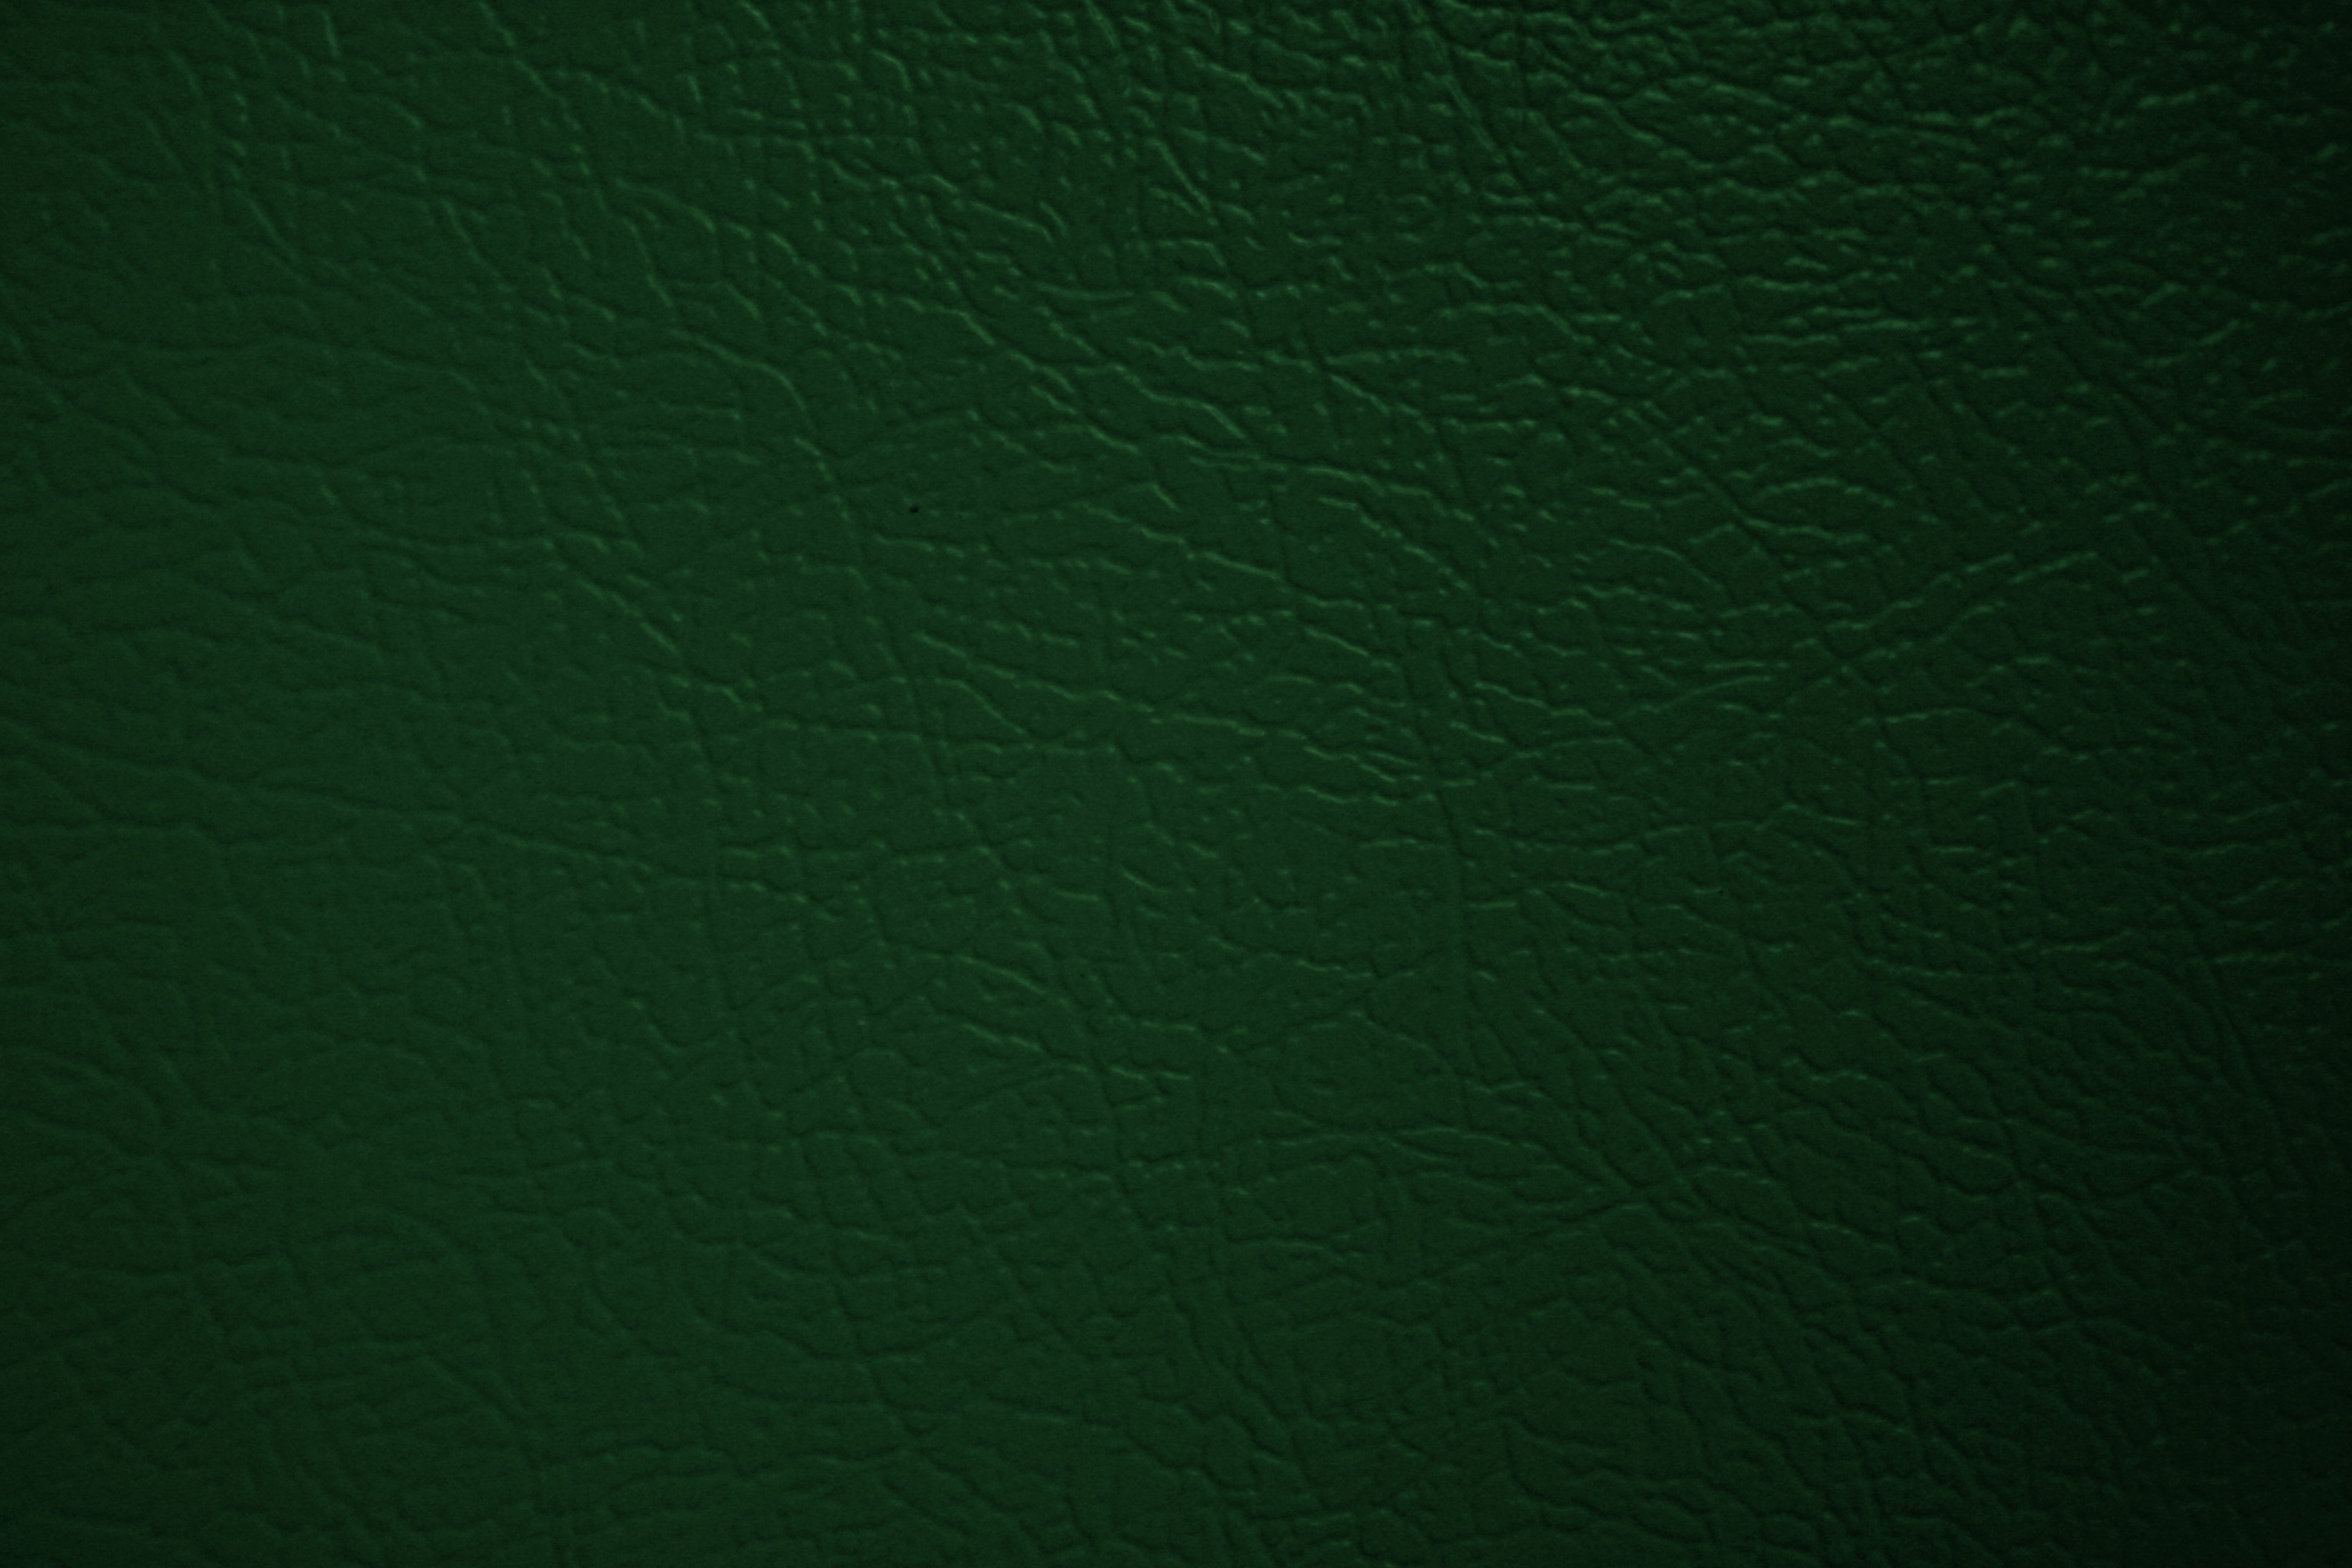 metallic dark green background